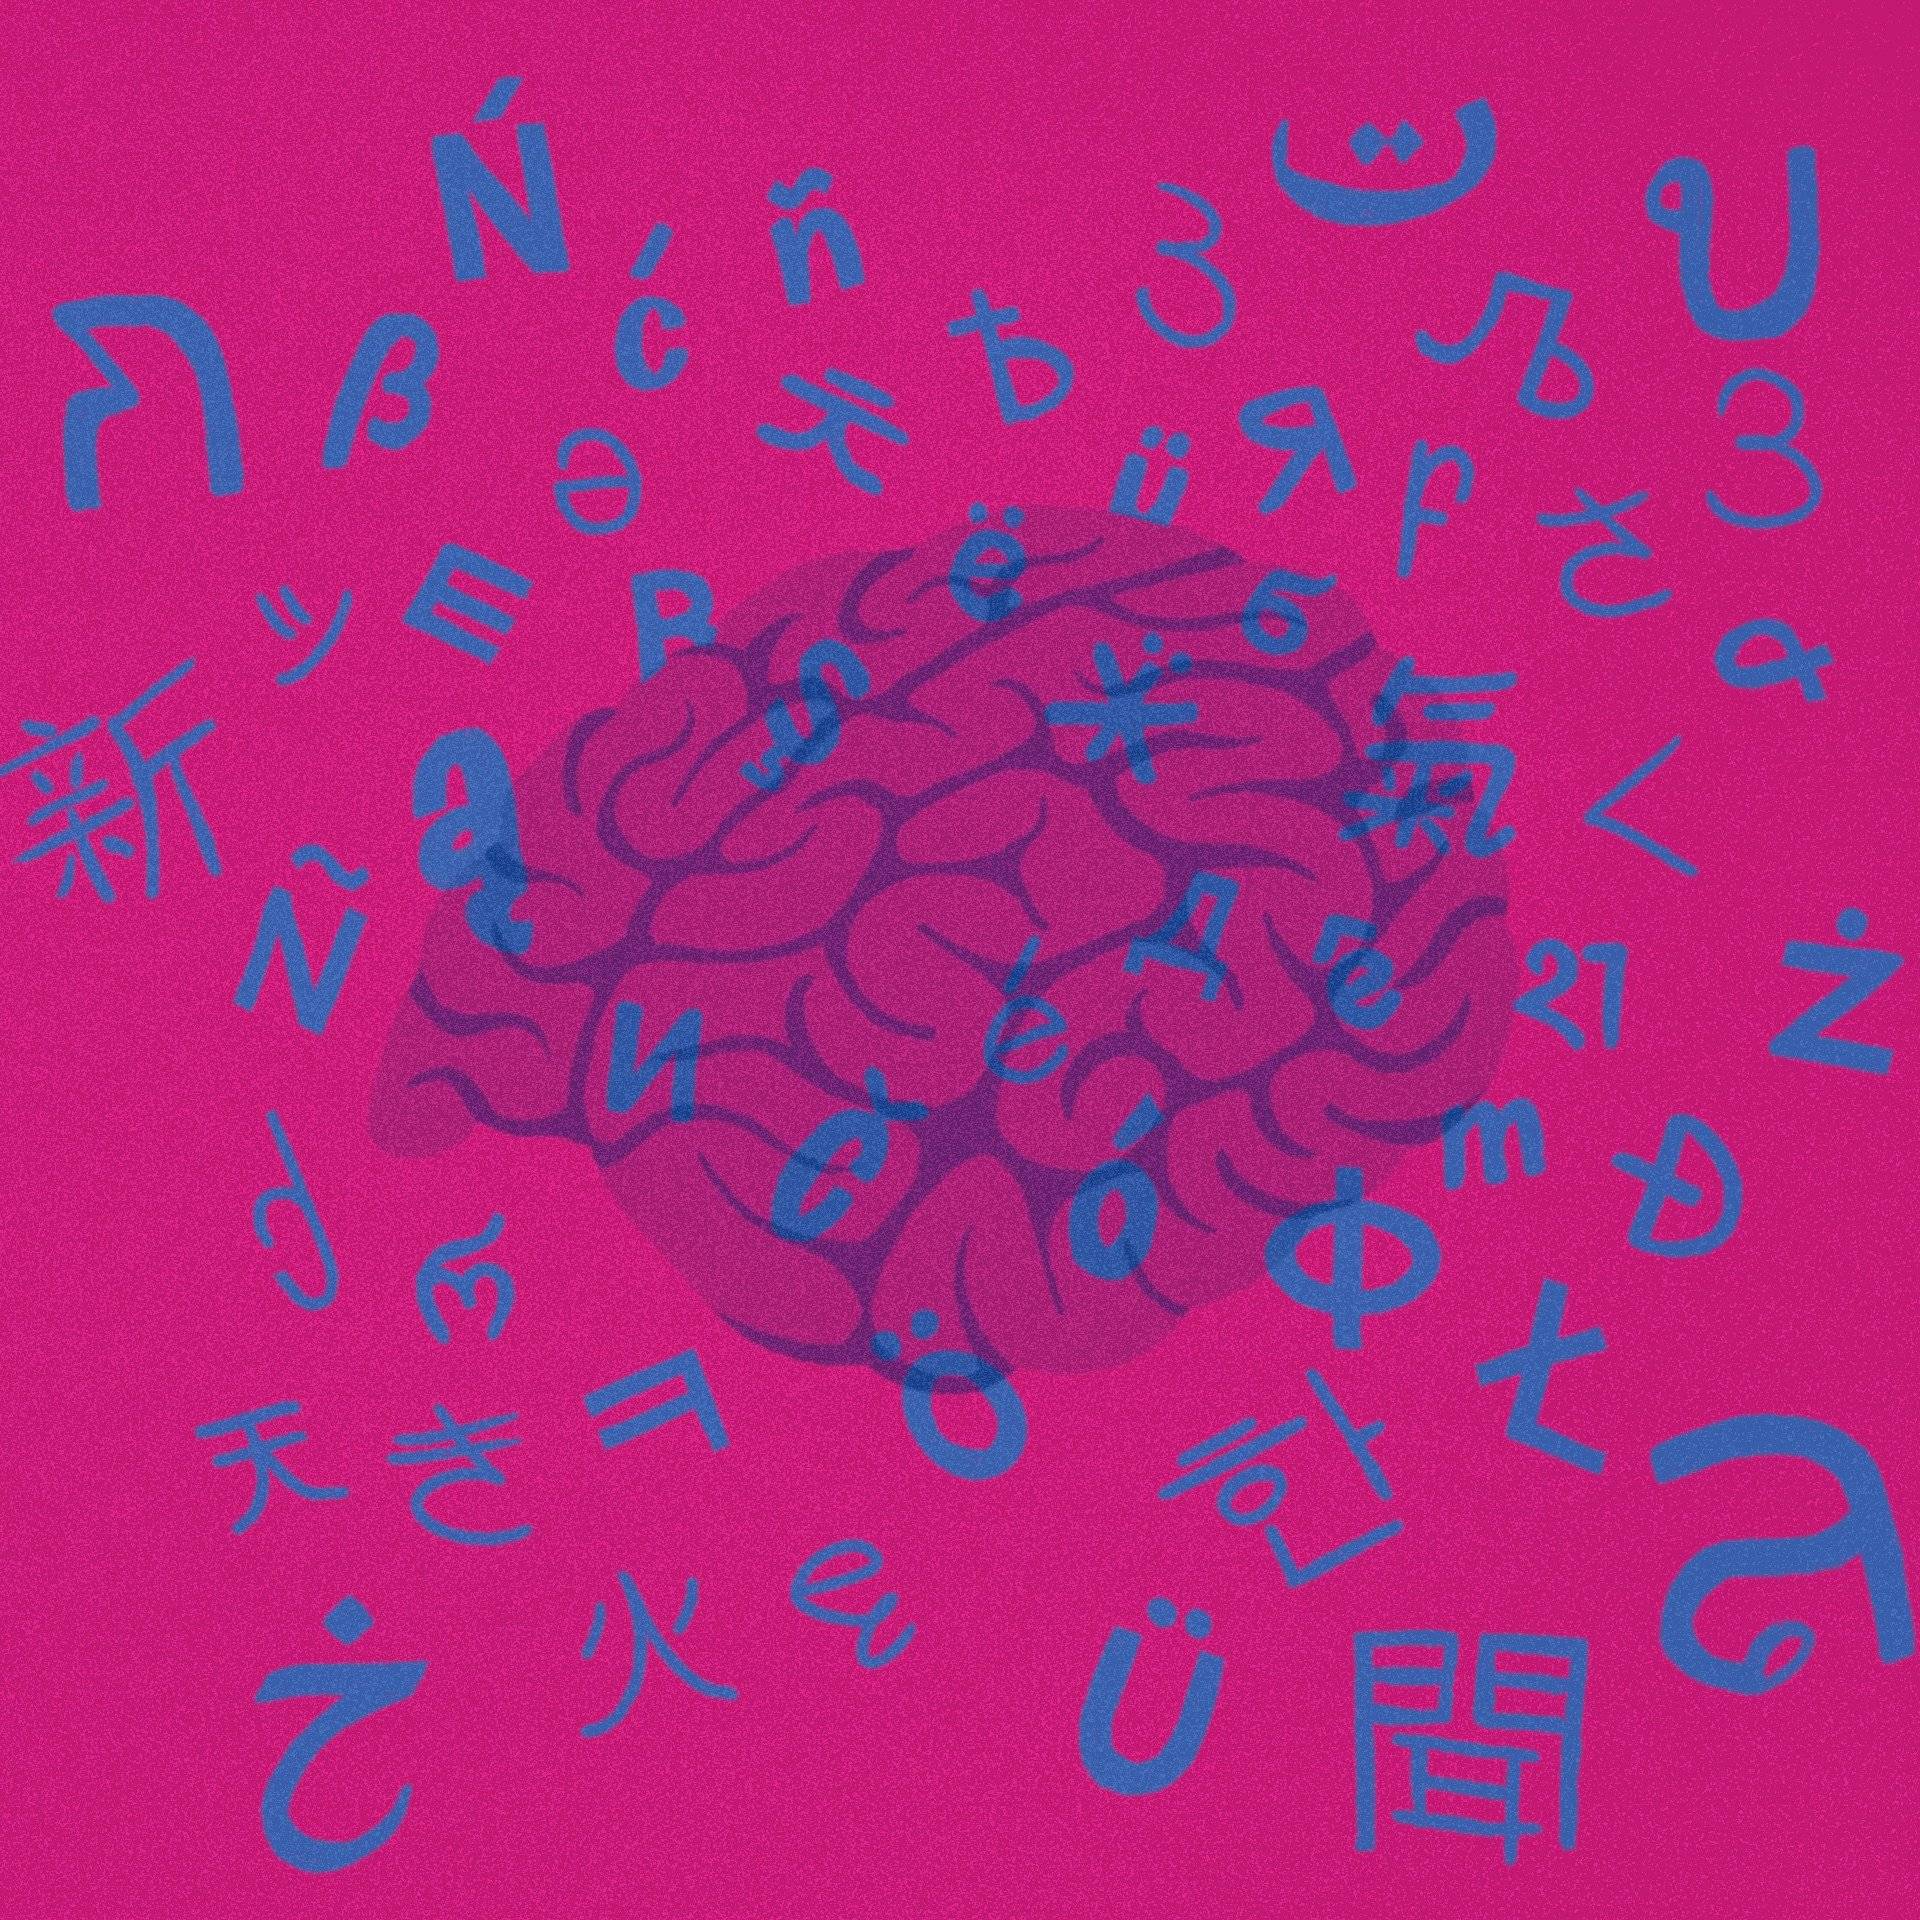 ilustracja przedstawia mózg na tle z liter z różnych alfabetów